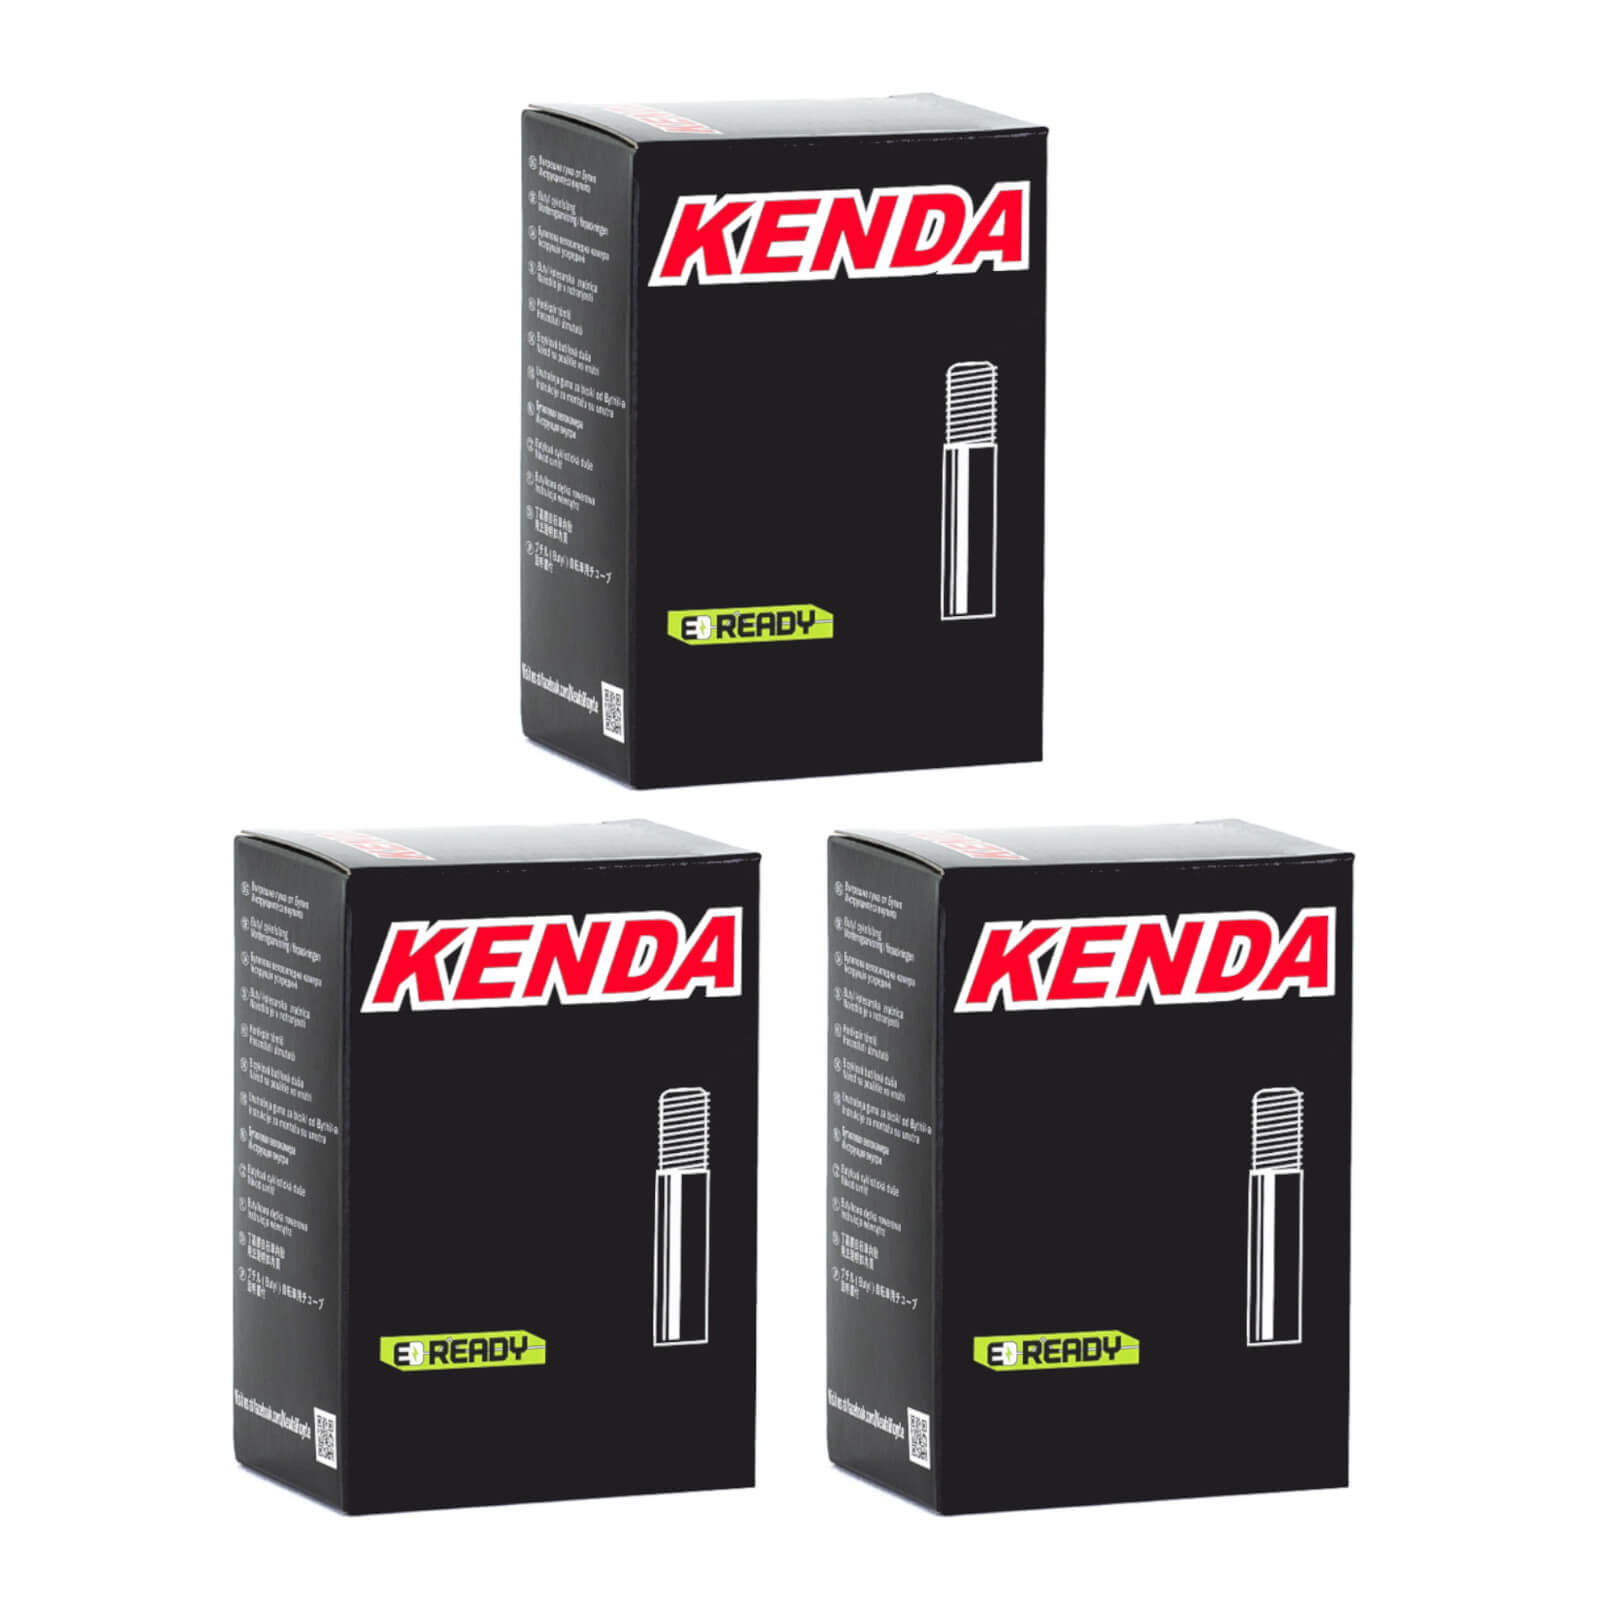 Kenda 20x1-1/8"-1-3/8"" 20 Inch Schrader Valve Bike Inner Tube Pack of 3